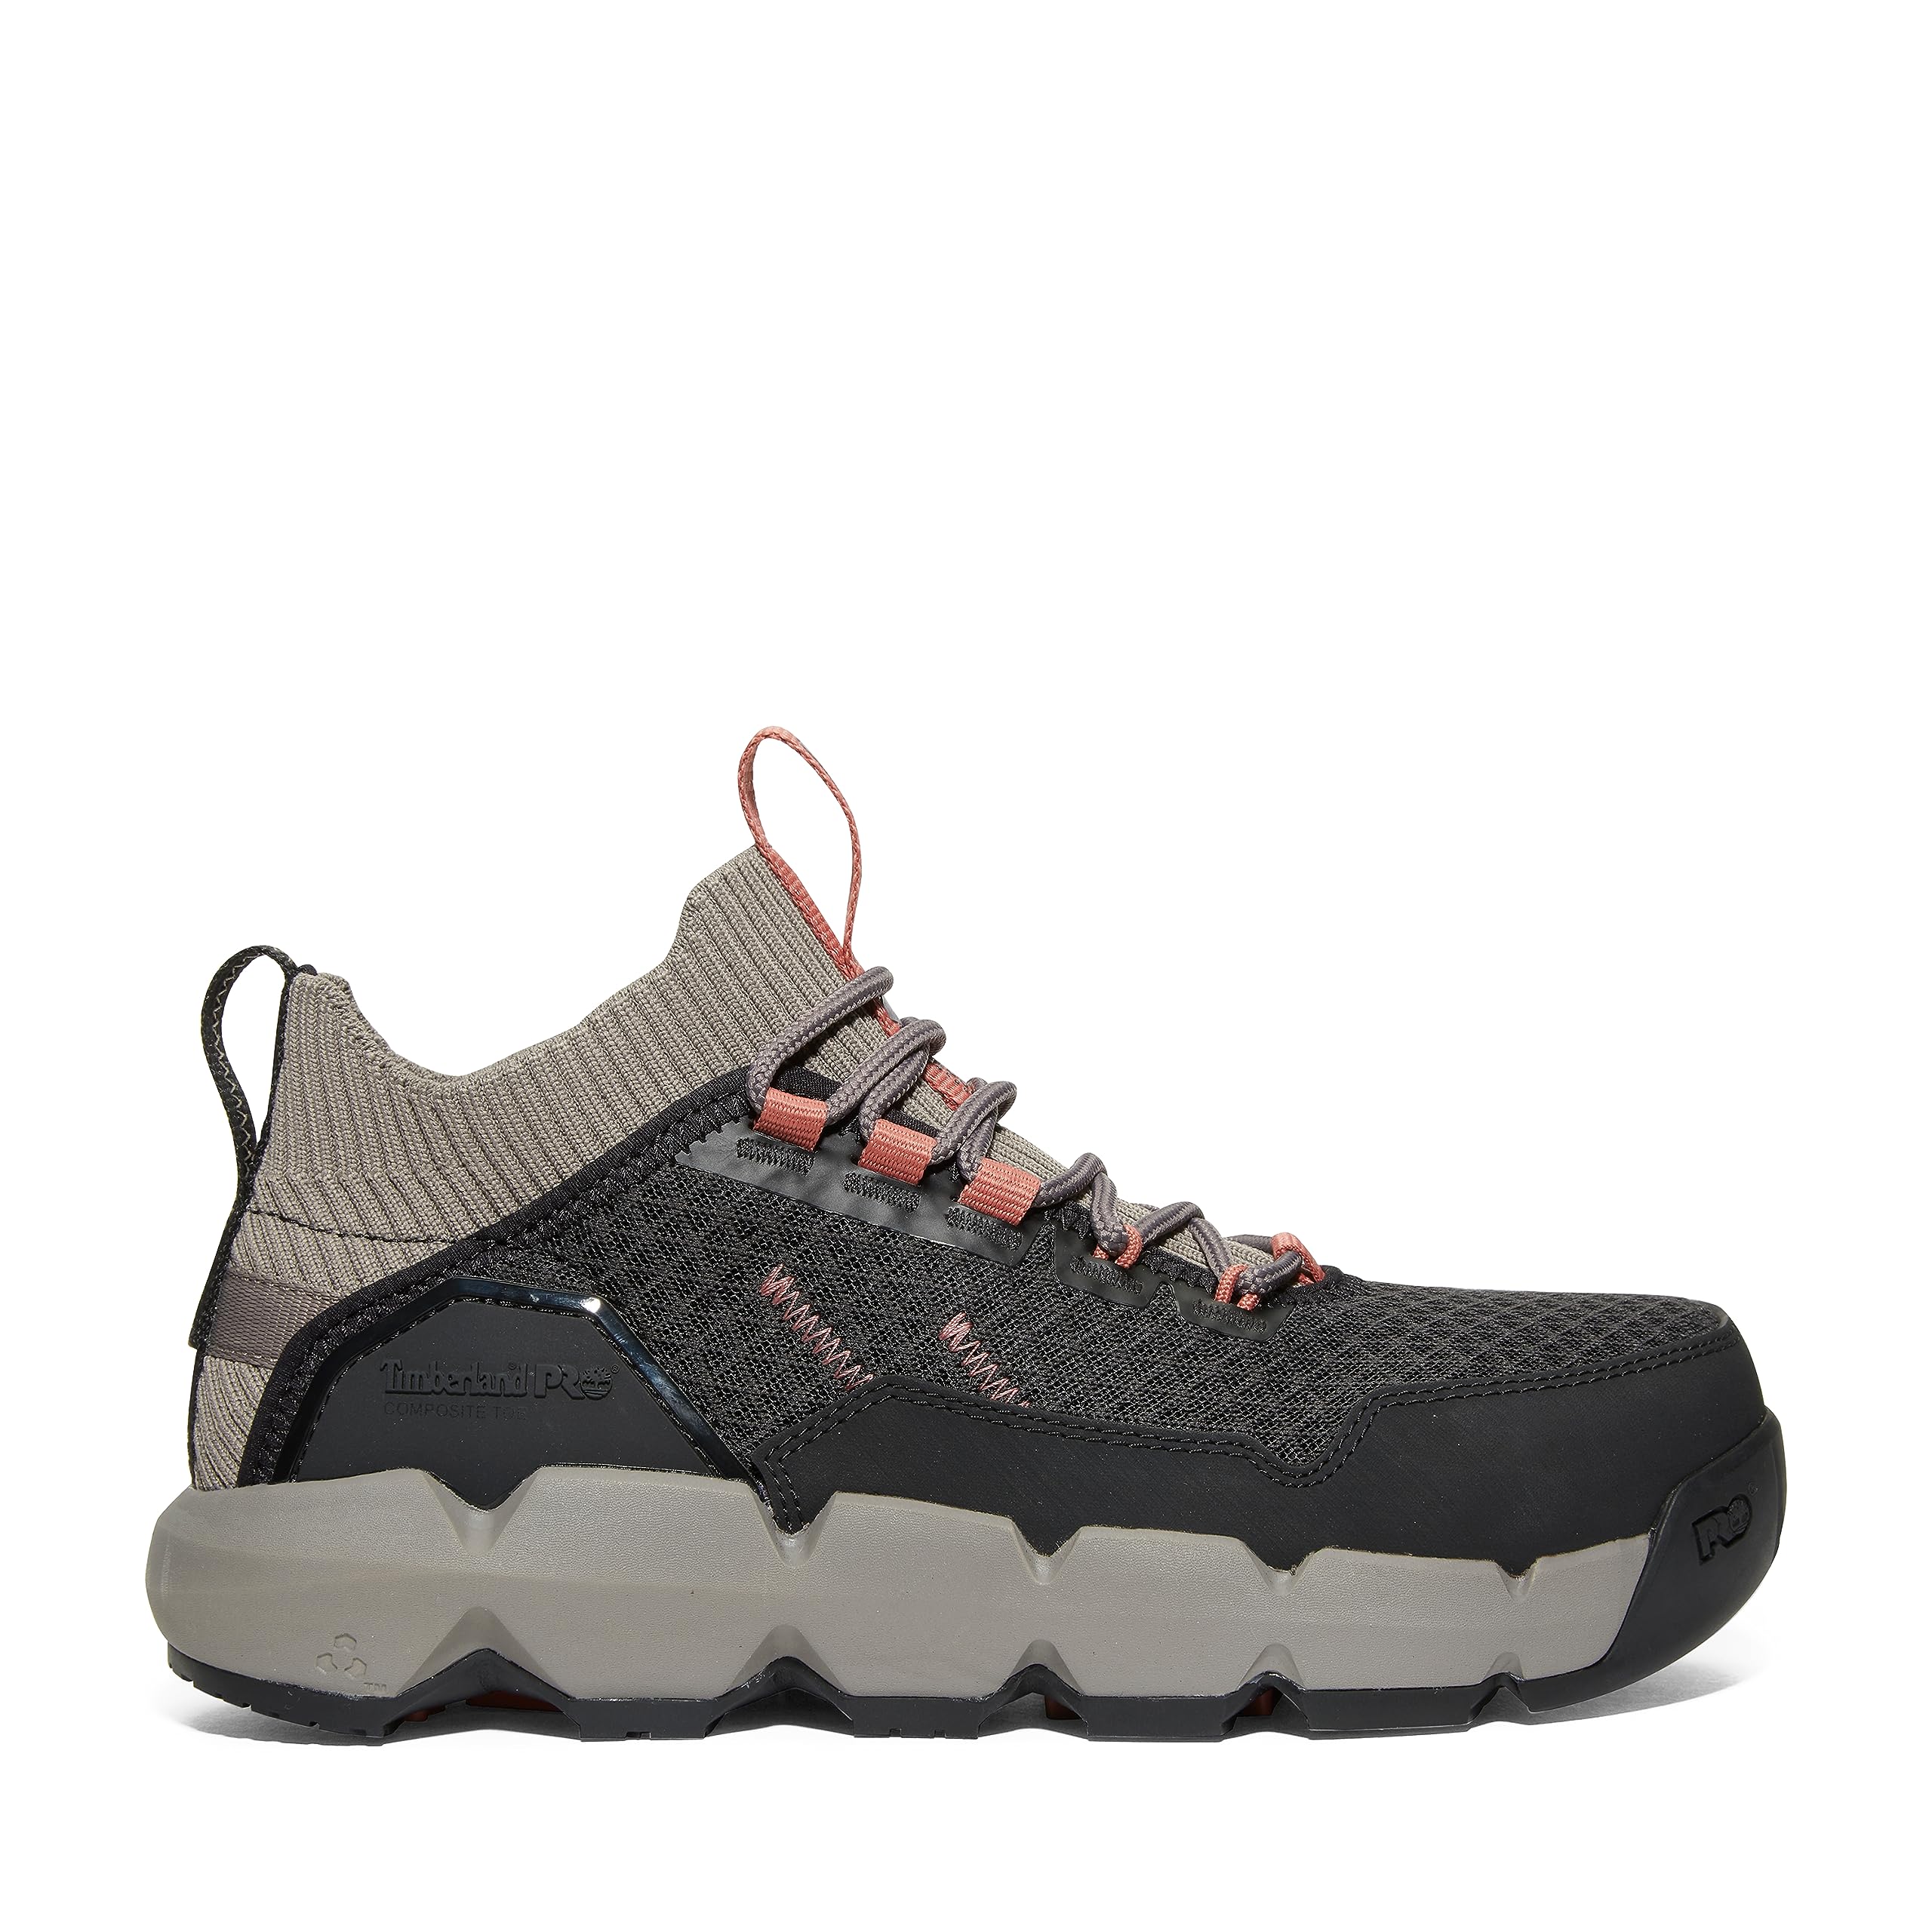 Timberland PRO Women's Morphix Industrial Casual Sneaker Boot